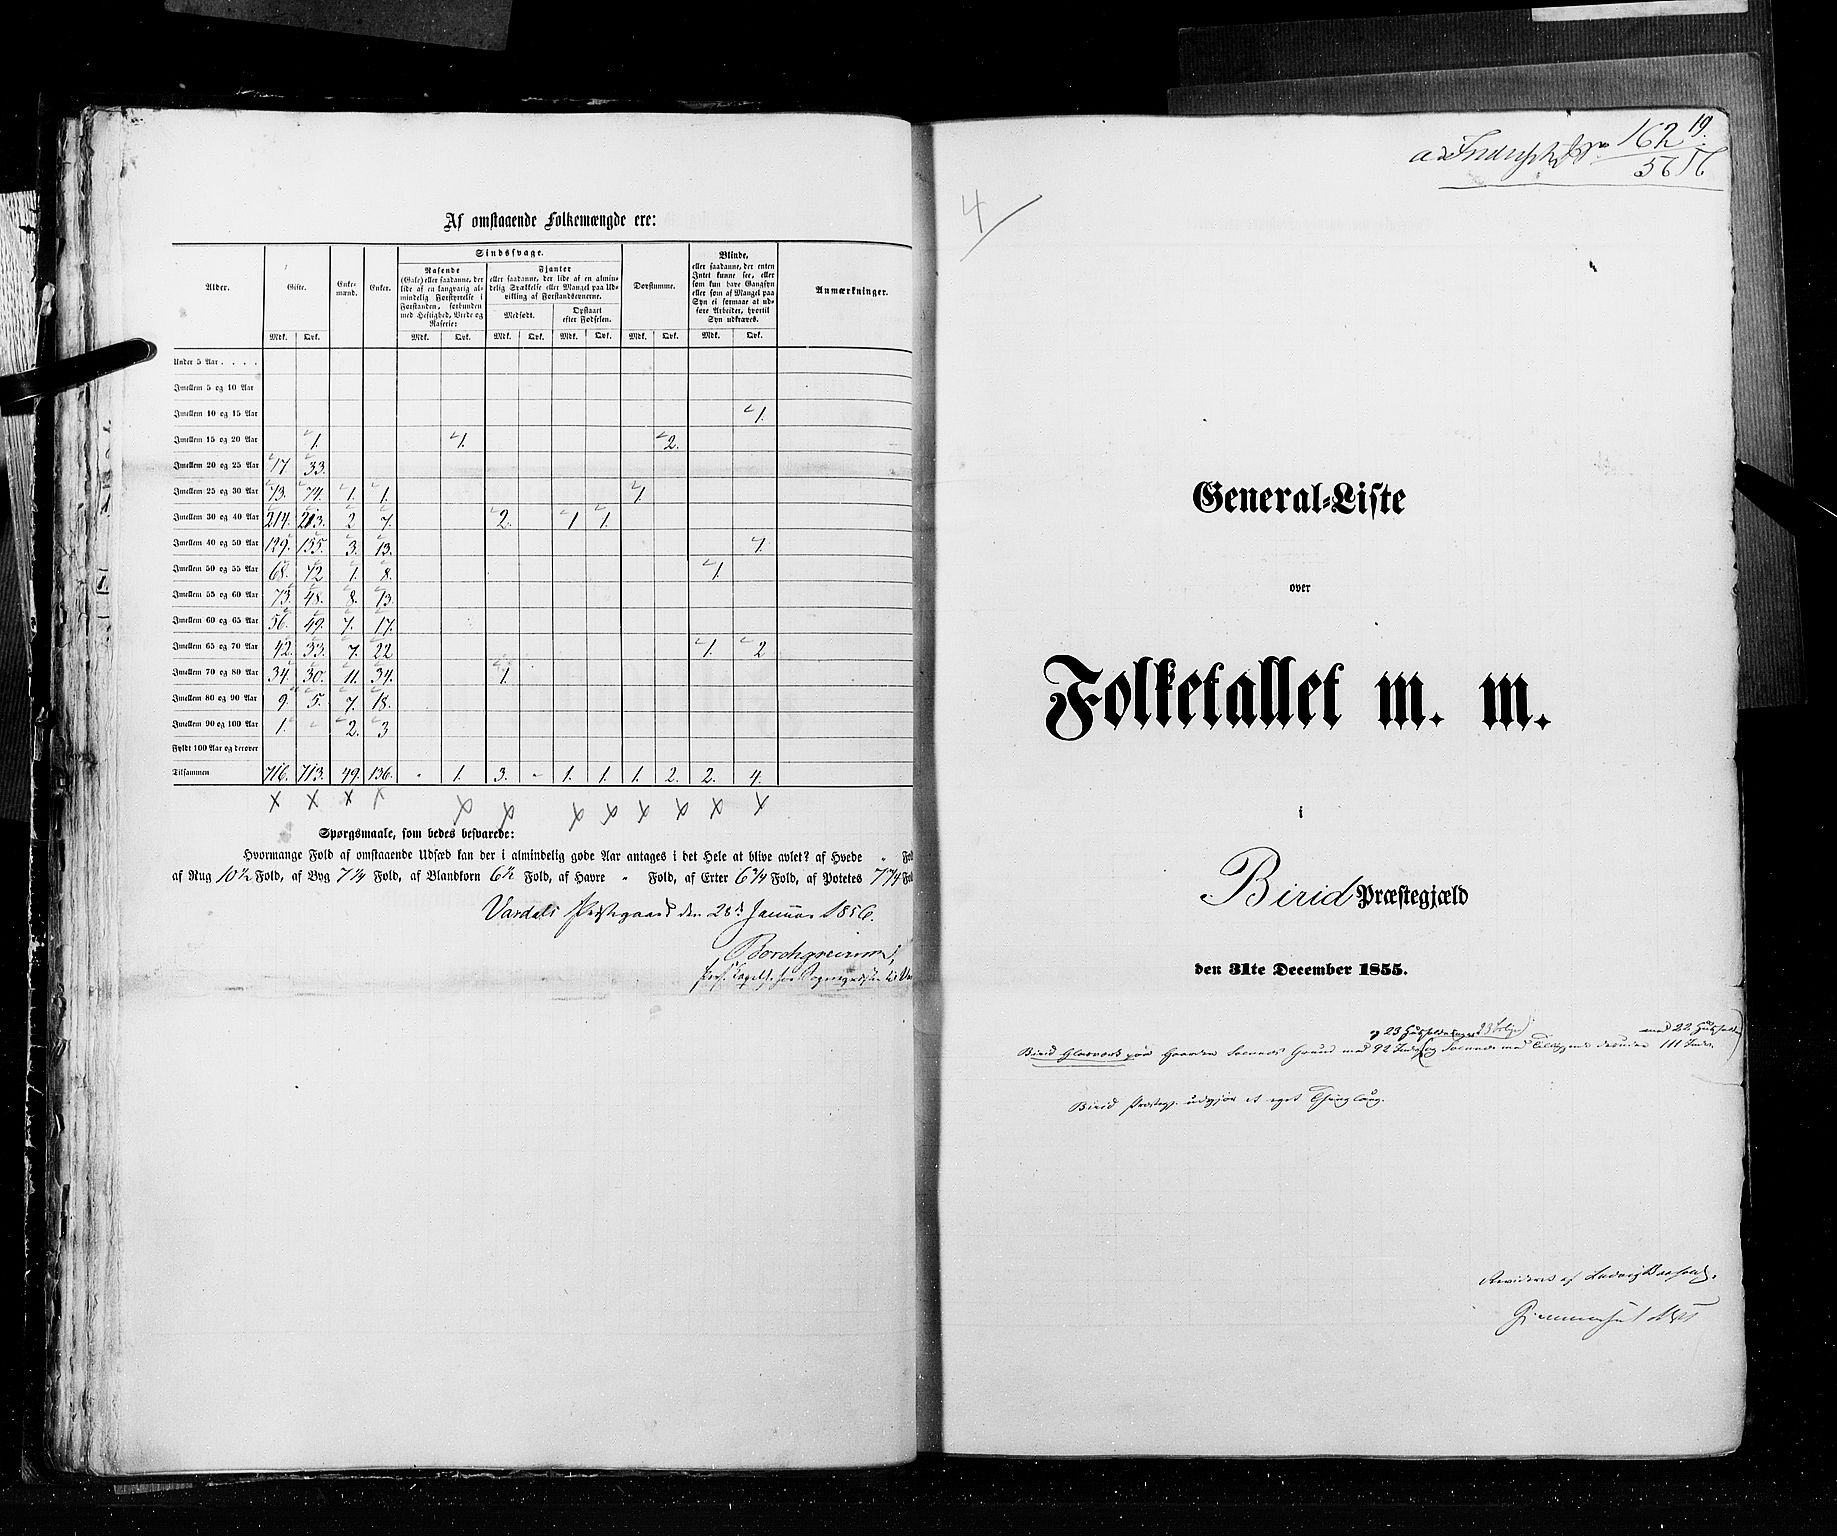 RA, Folketellingen 1855, bind 2: Kristians amt, Buskerud amt og Jarlsberg og Larvik amt, 1855, s. 19